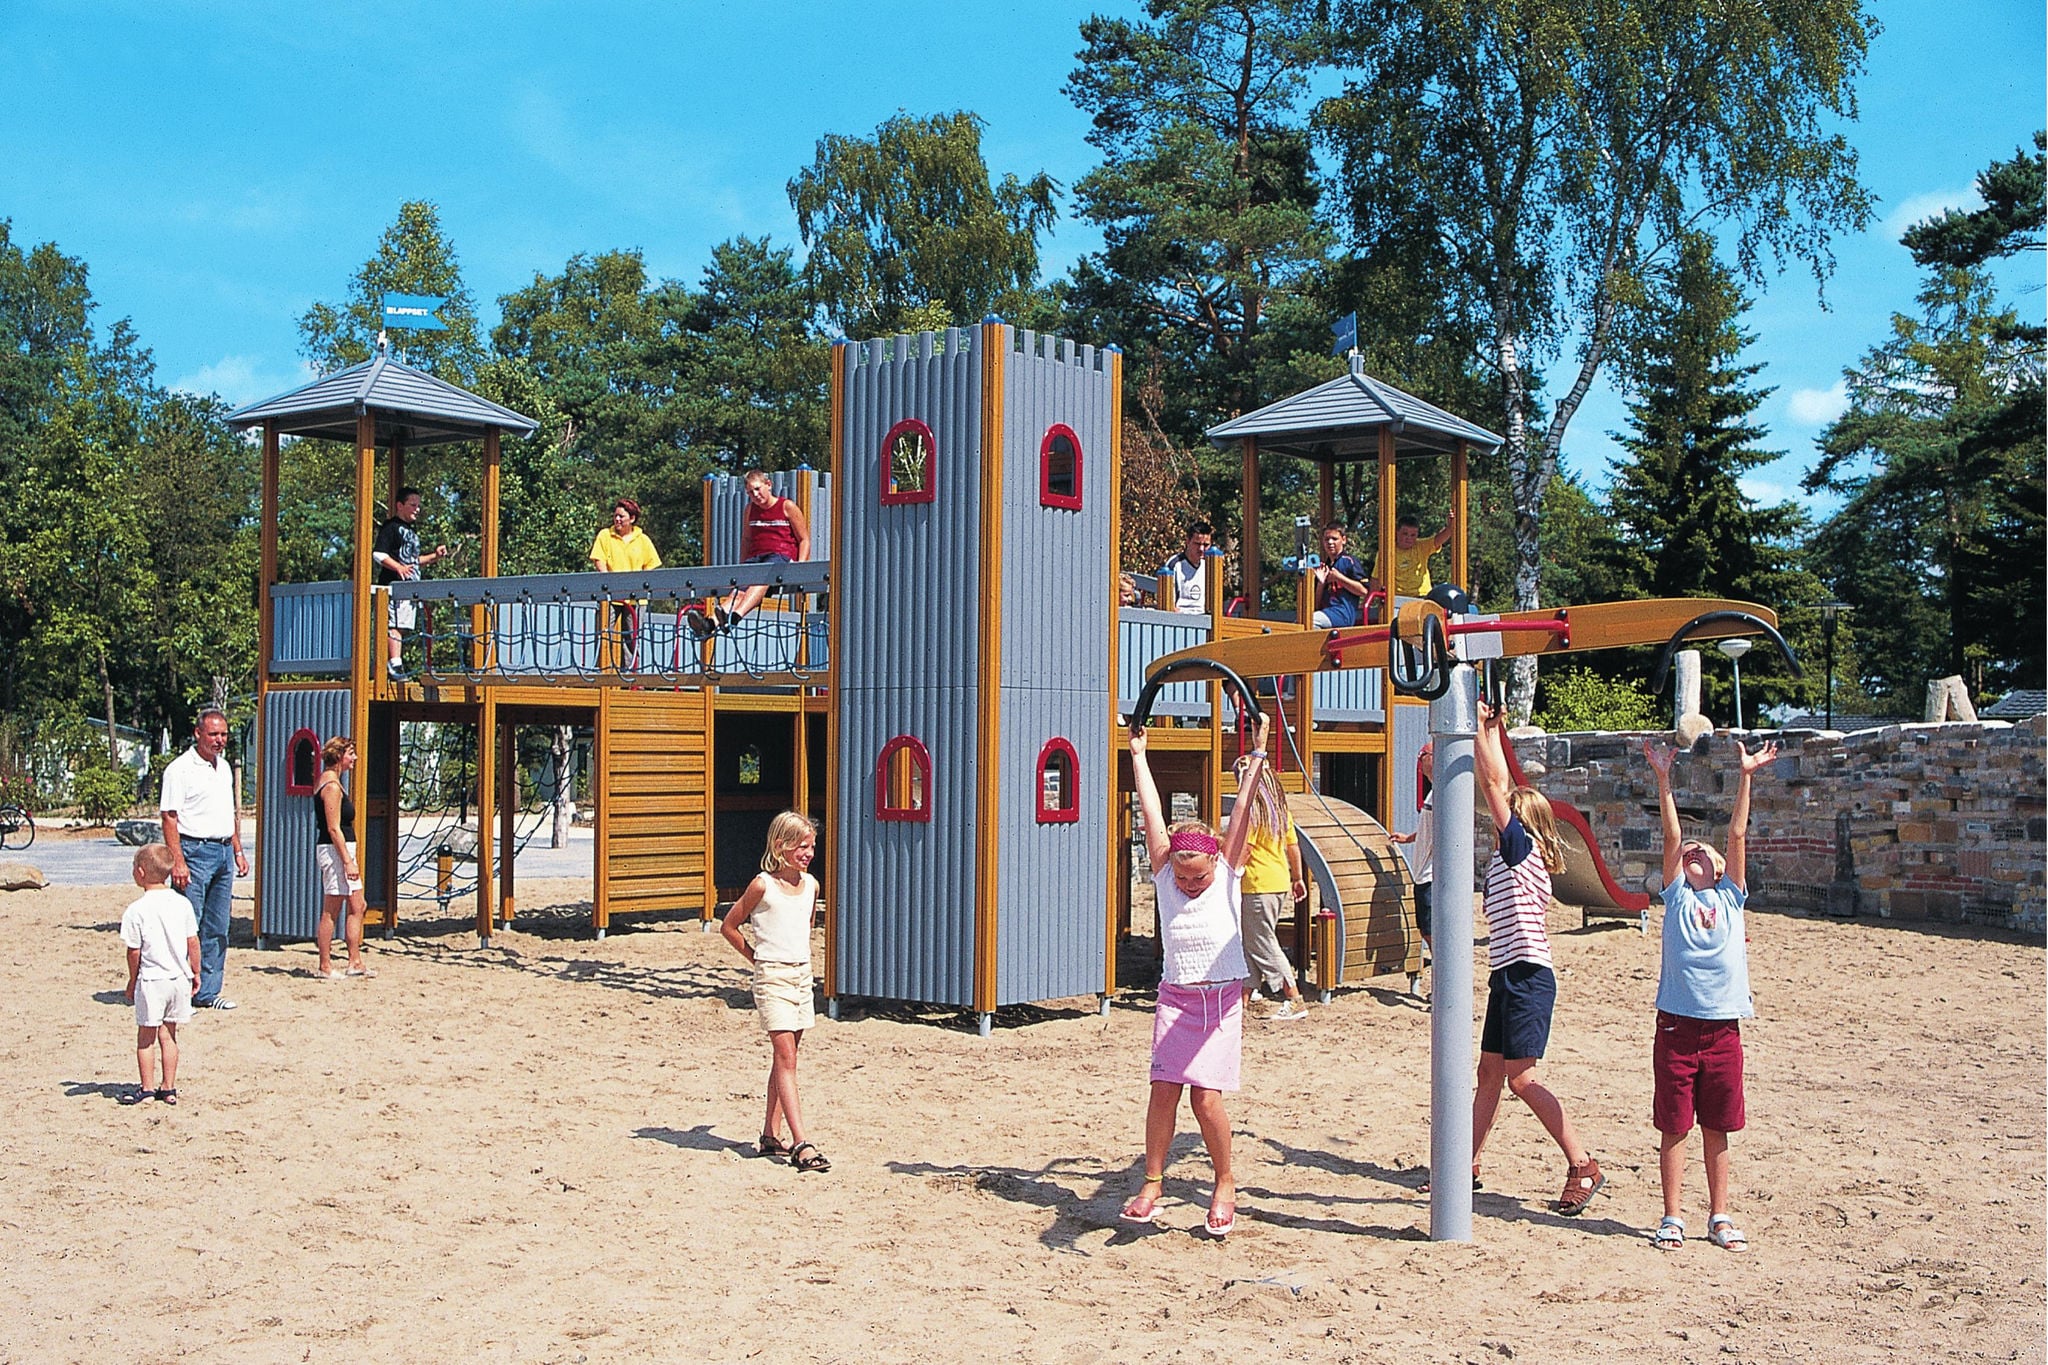 Gezellige bungalow met afwasmachine, op een vakantiepark op de Veluwe